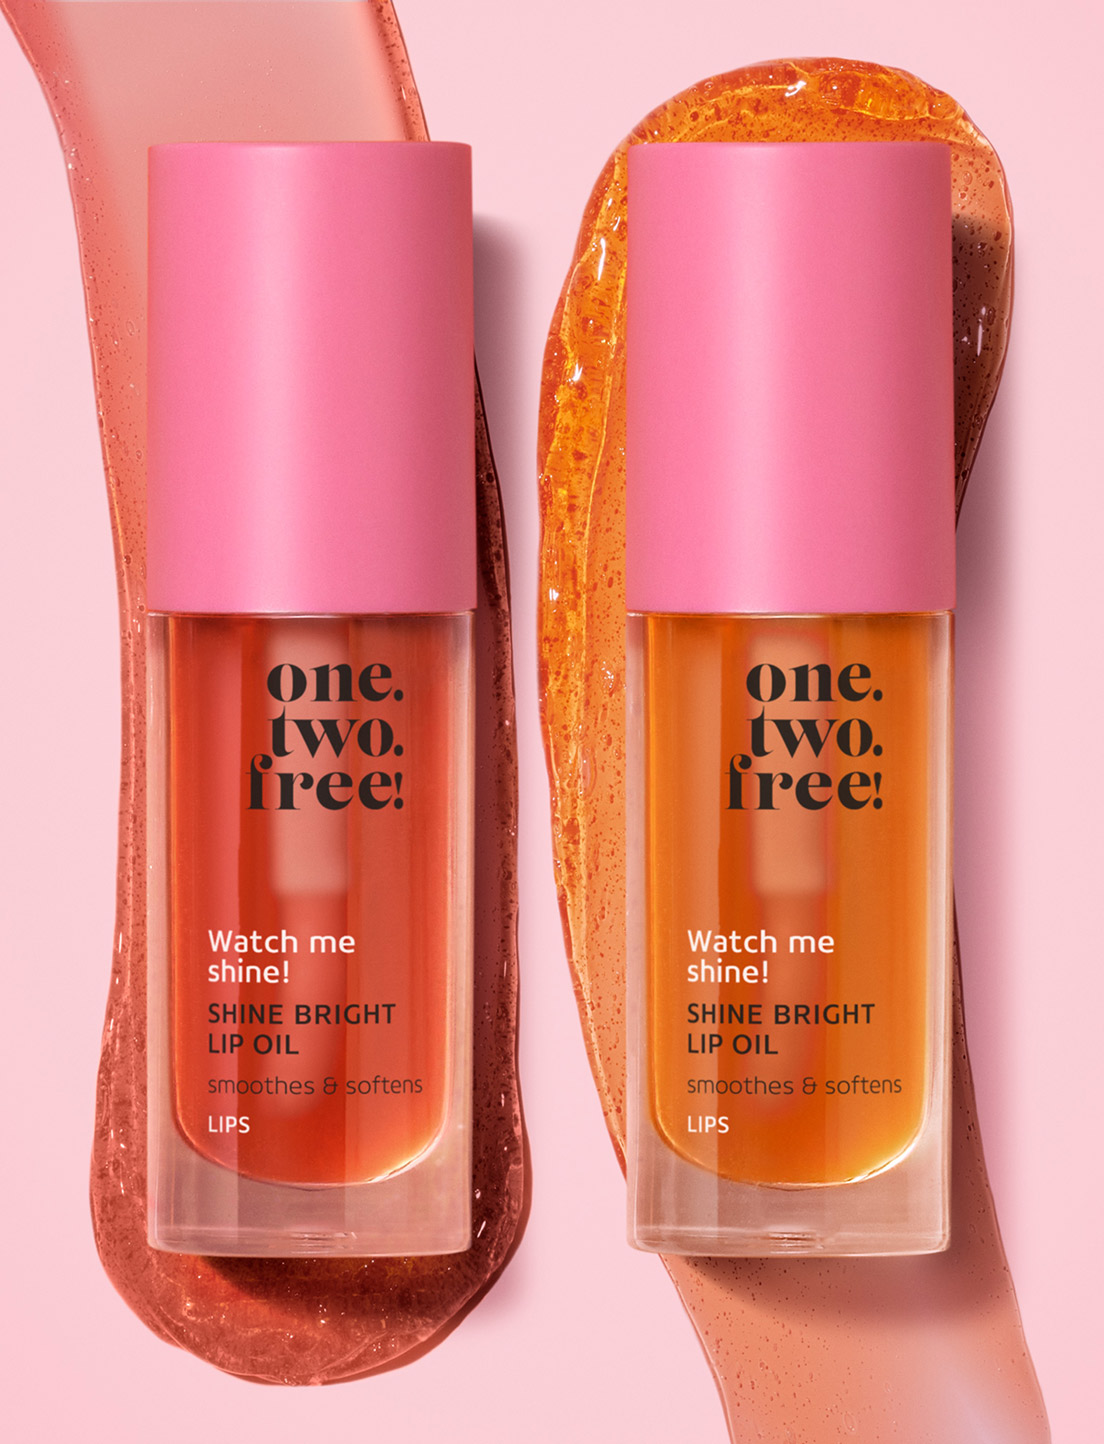 Shine Bright Lip Oil - one.two.free!